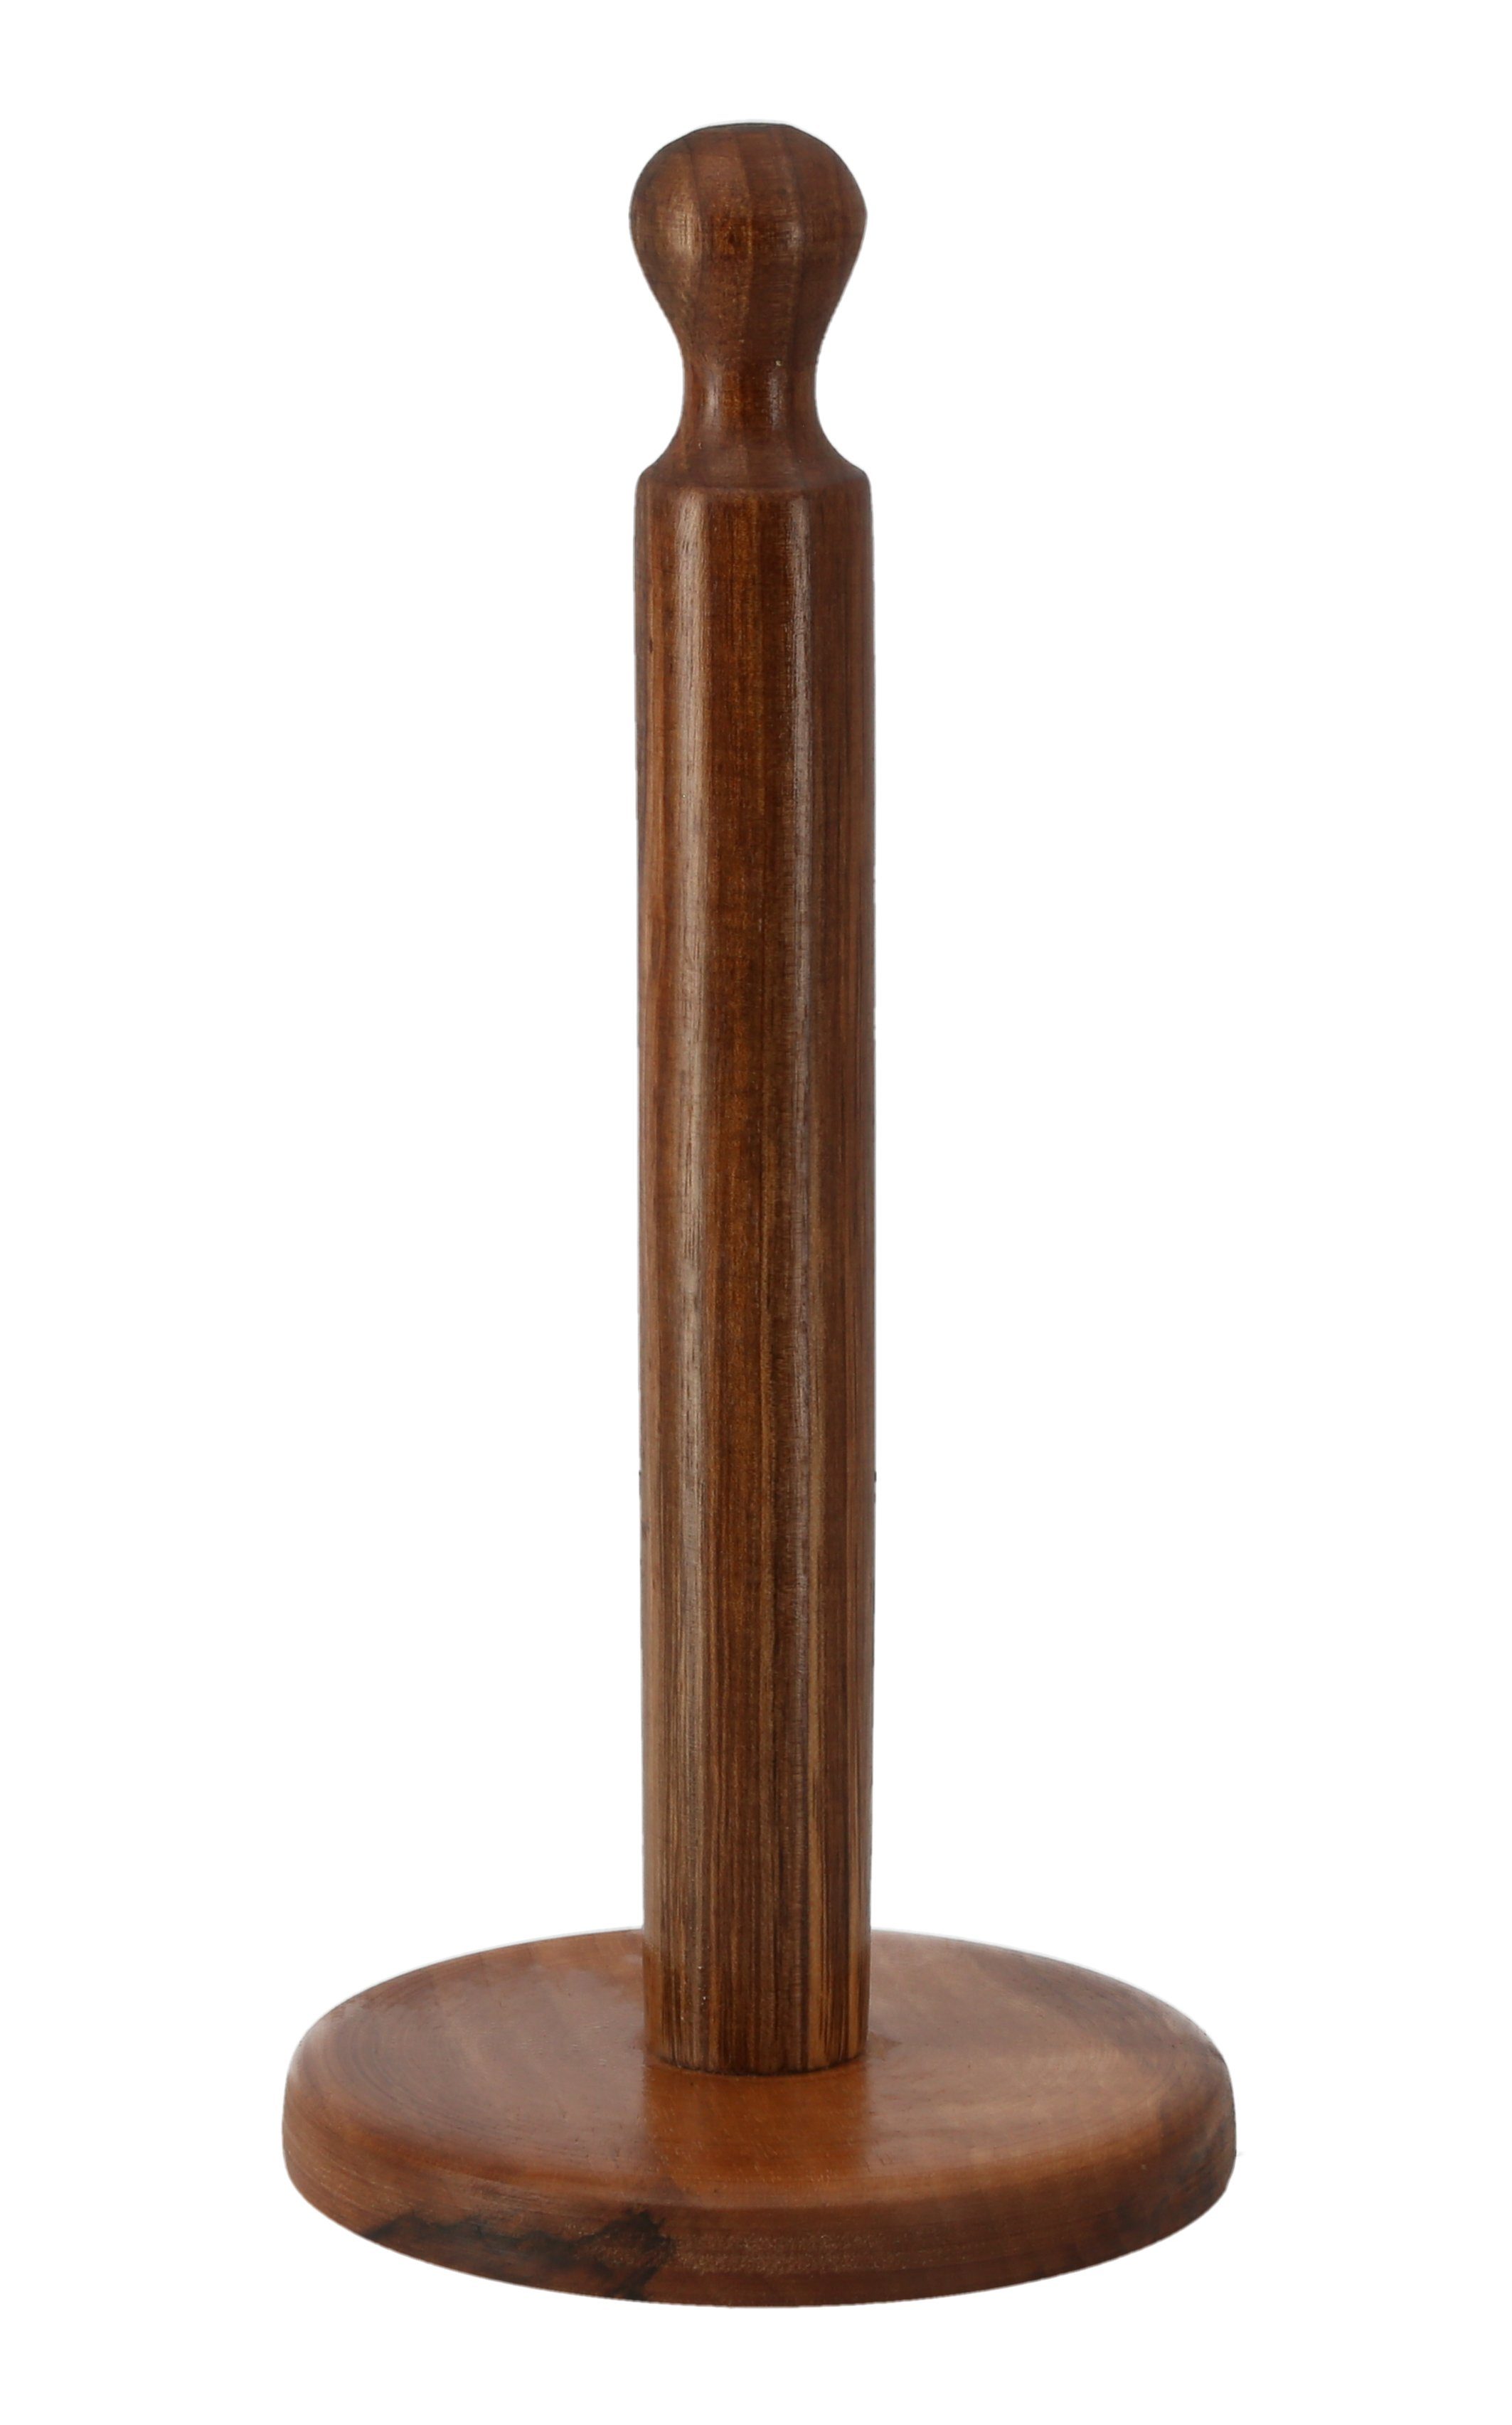 Lantelme Küchenrollenhalter Küchenrollenständer Holz, (100% 8713), einzigartige 39cm 1-St., Walnussholz, höhe, Maserung